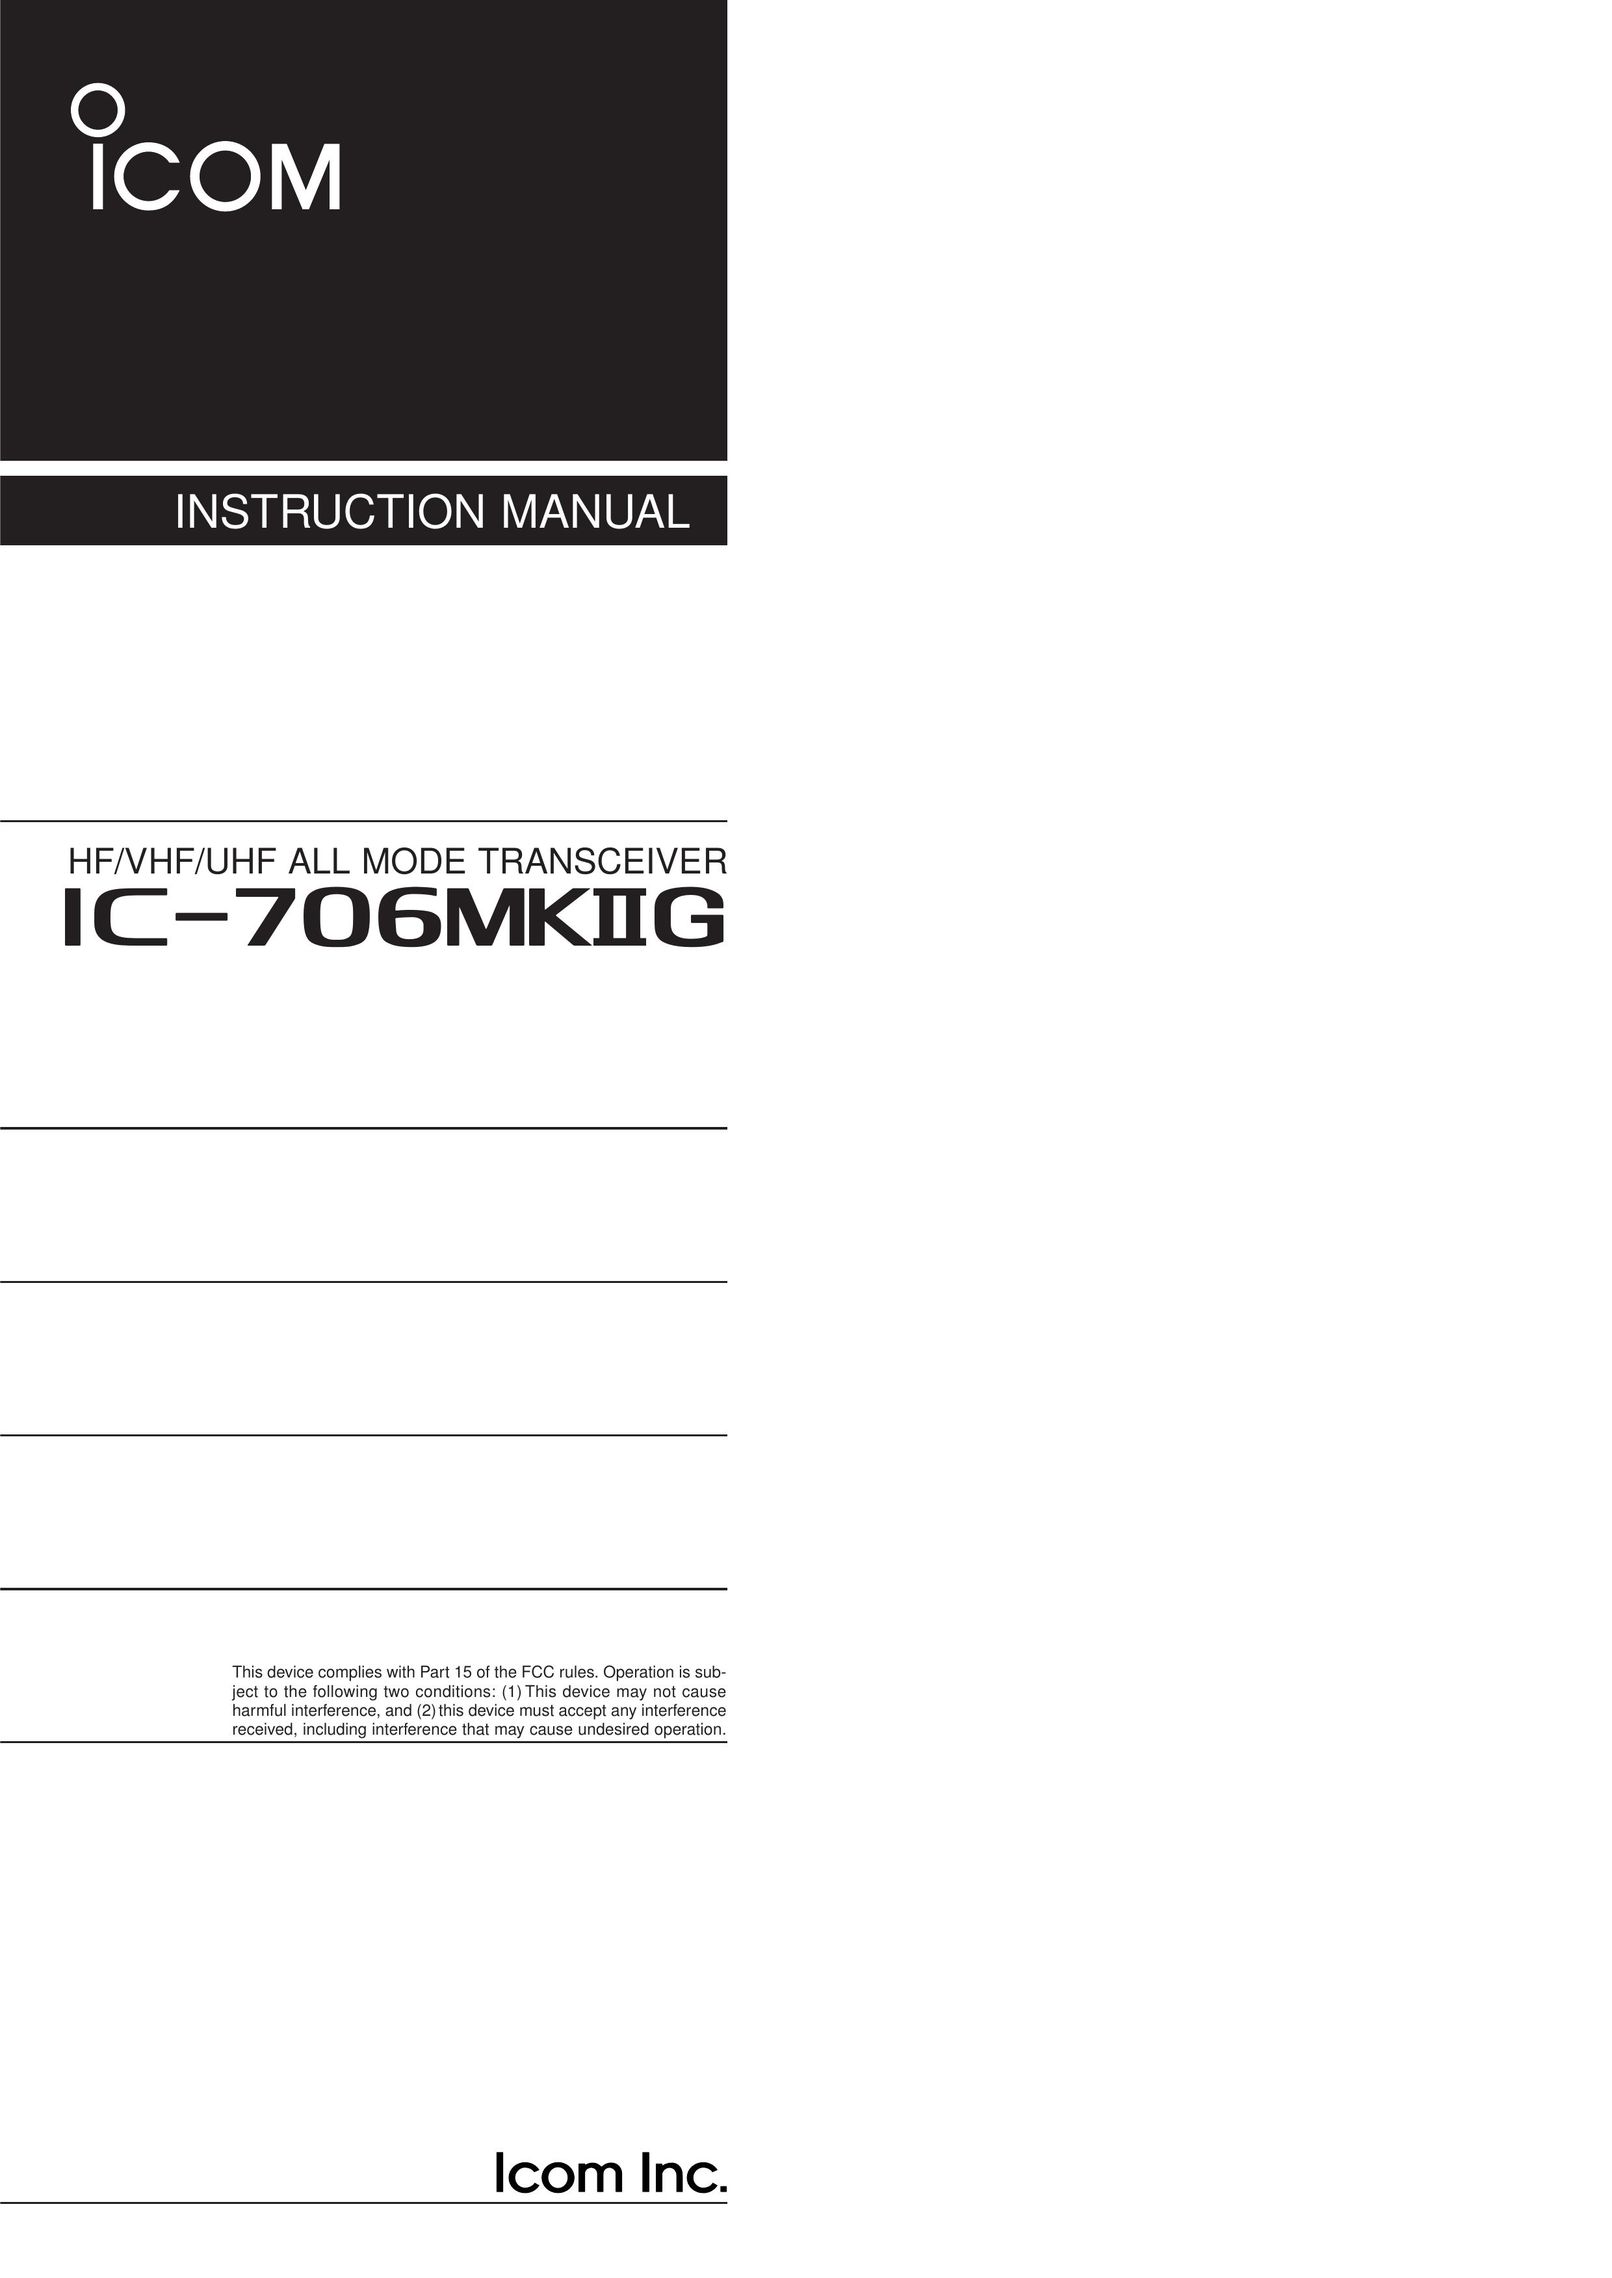 Icom HF/VHF/UHF ALL MODE TRANSCEIVER TV Receiver User Manual